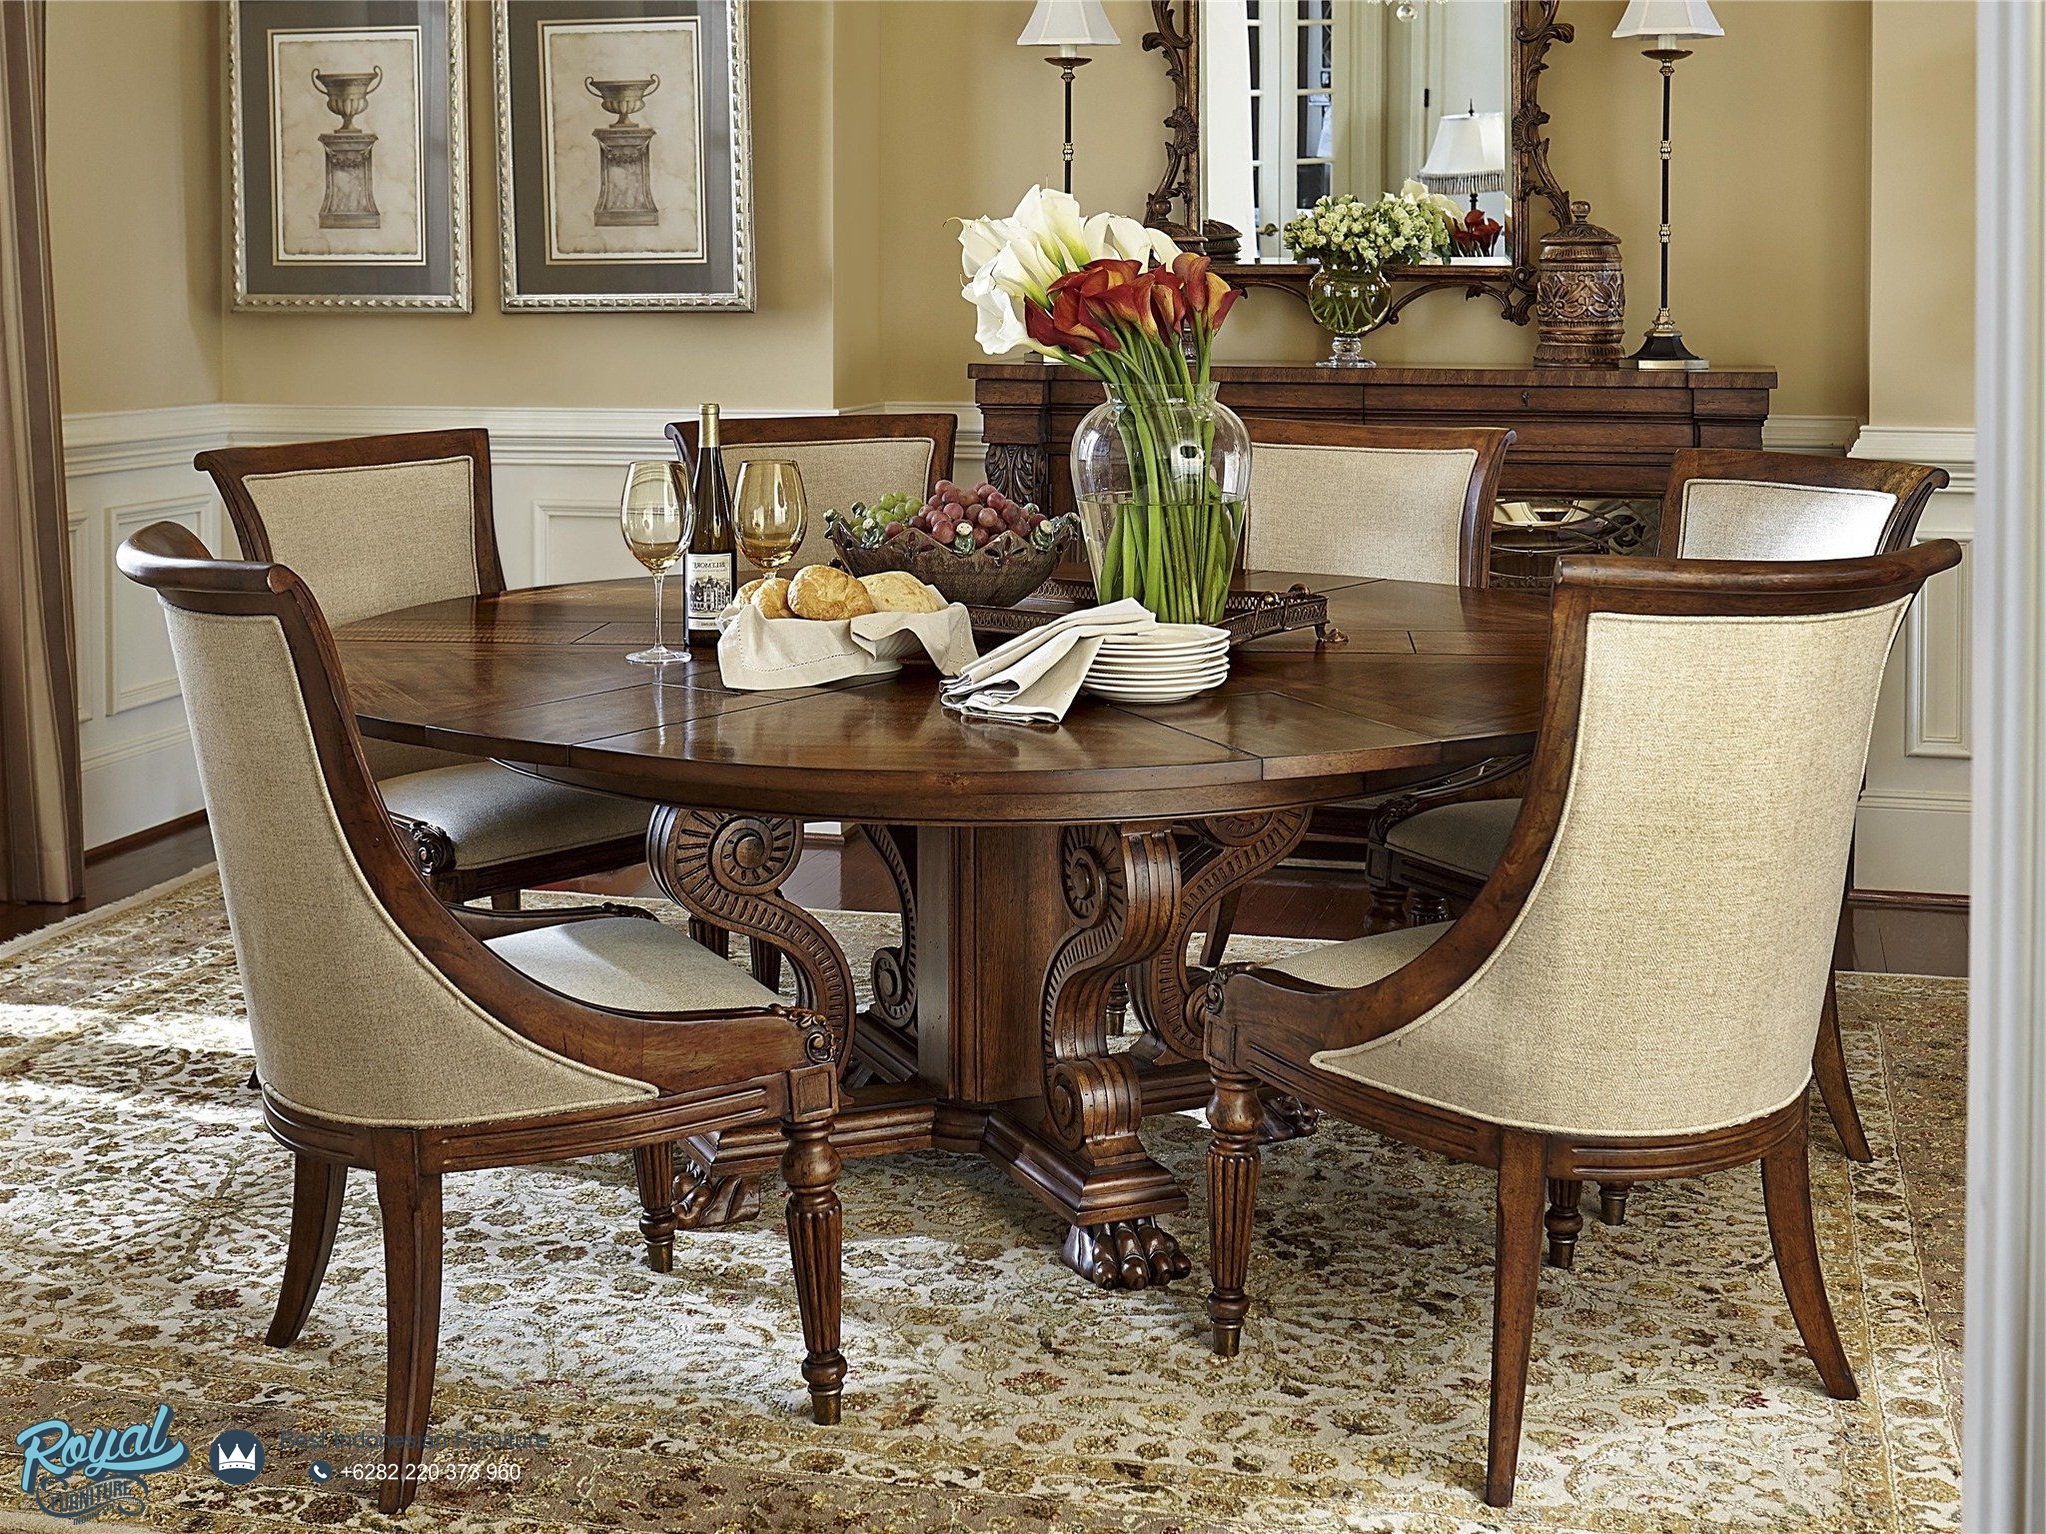 Красивый обеденный стол. Обеденный стол Barnes Round Dining Table. Стол со стульями в гостиную. Круглый обеденный стол в интерьере. Стол со стульями вгостинной.